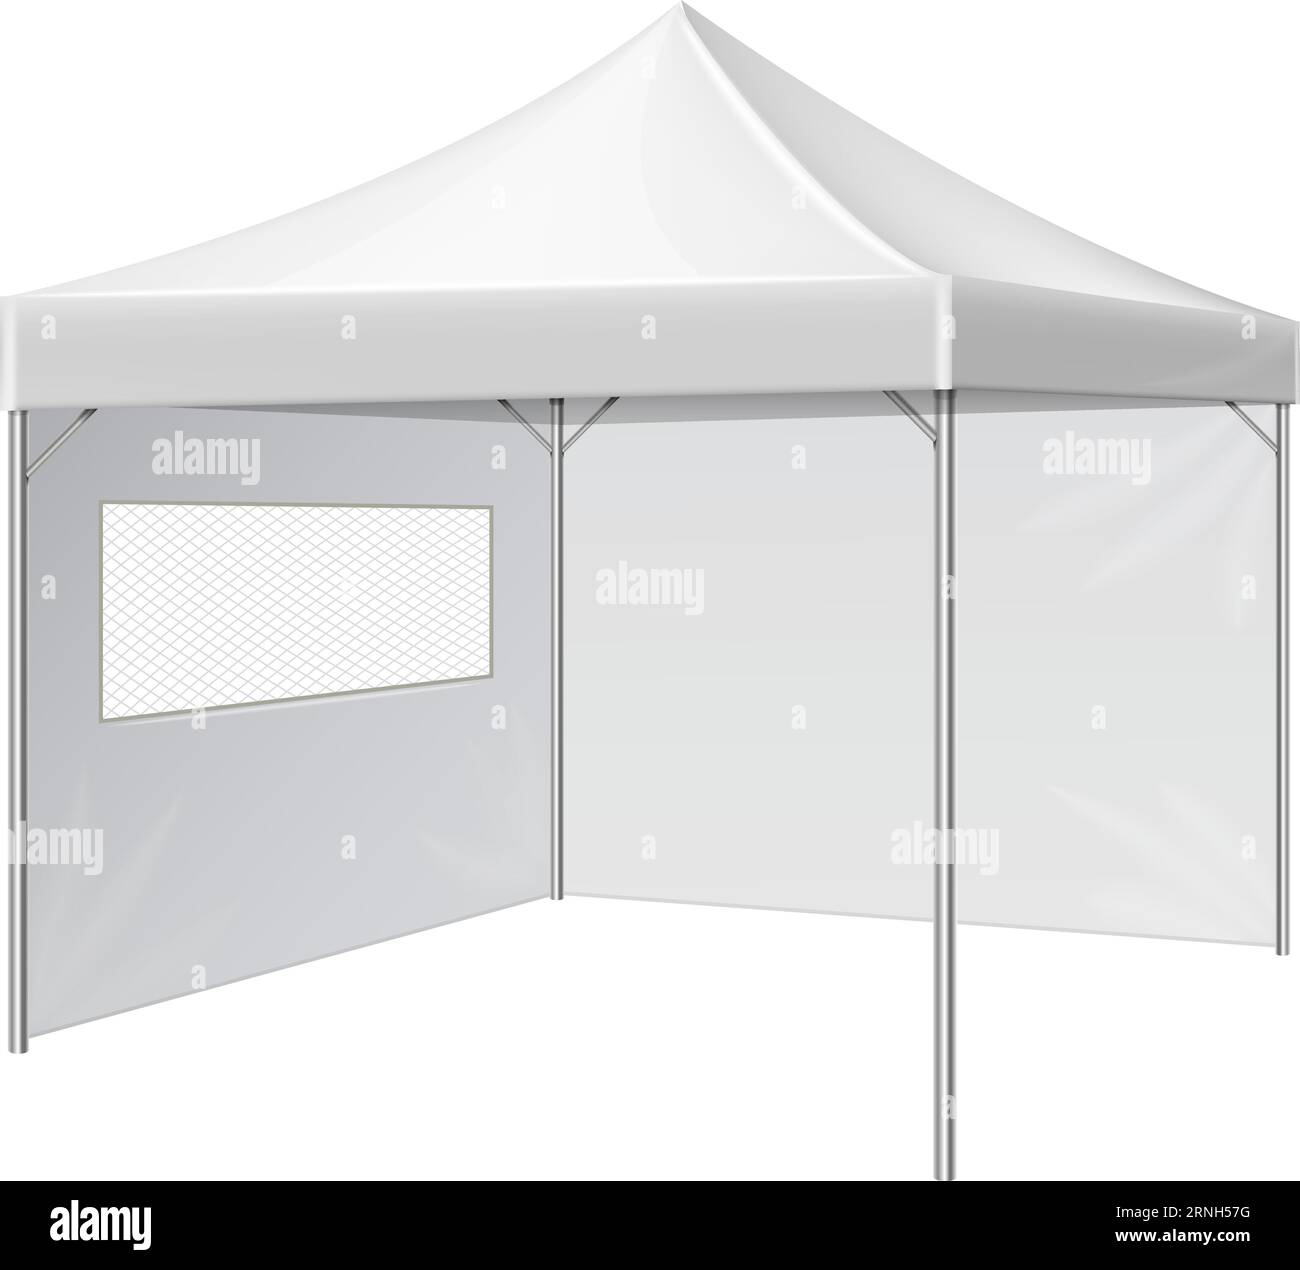 Weißes Zelt. Sonnenschirm für Veranstaltungen im Freien. Realistisches Modell Stock Vektor